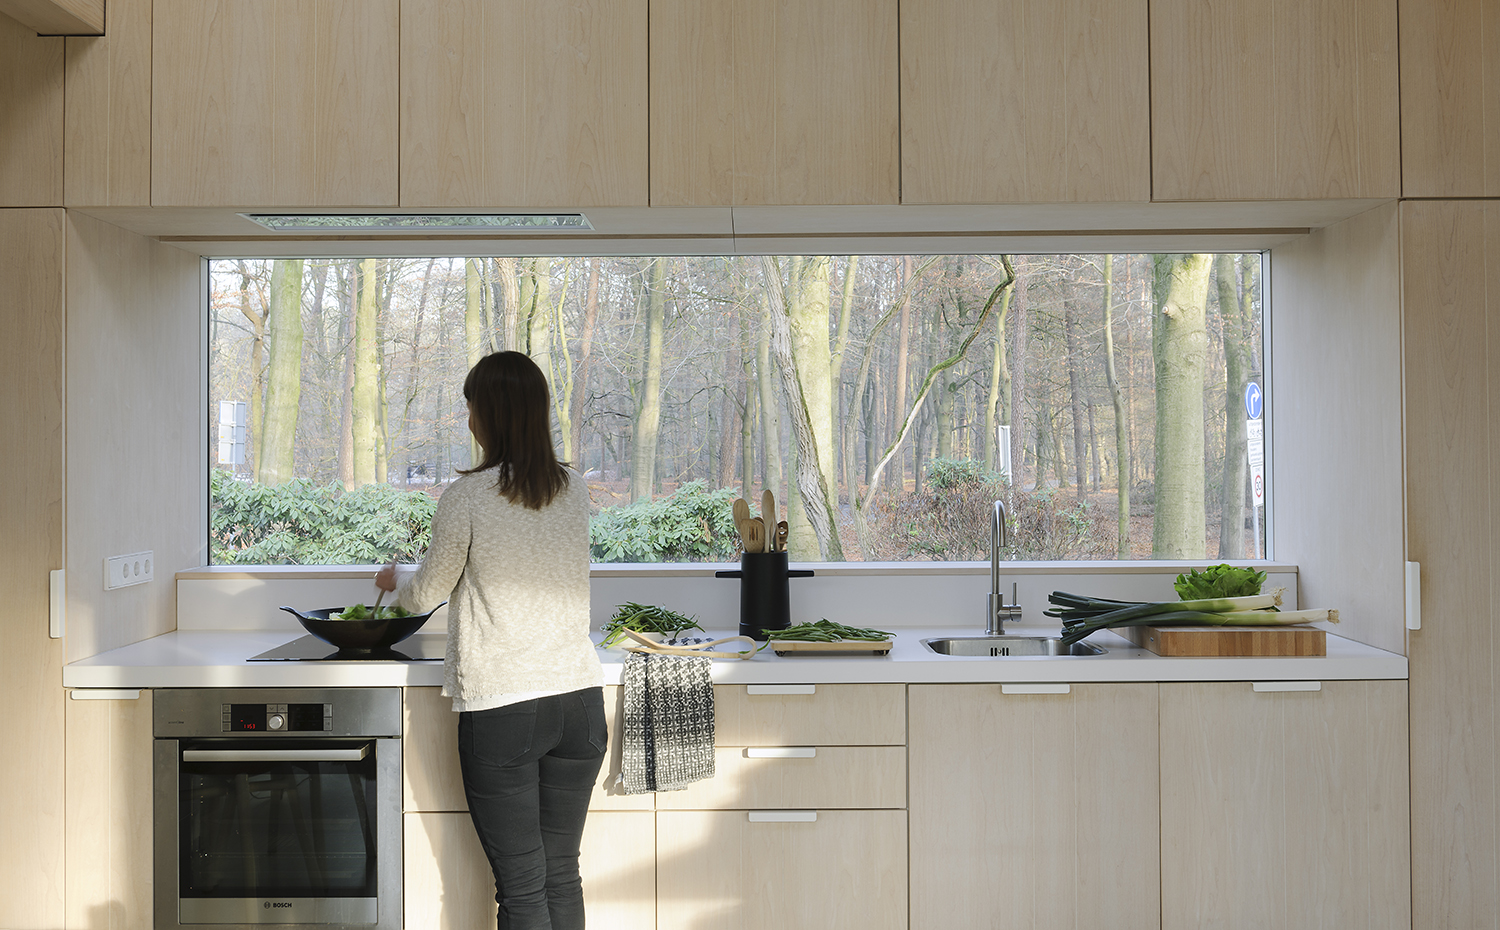 La cocina es un entorno especialmente sensible por su exposición a las altas temperaturas de las placas de cocción y los aparatos eléctricos